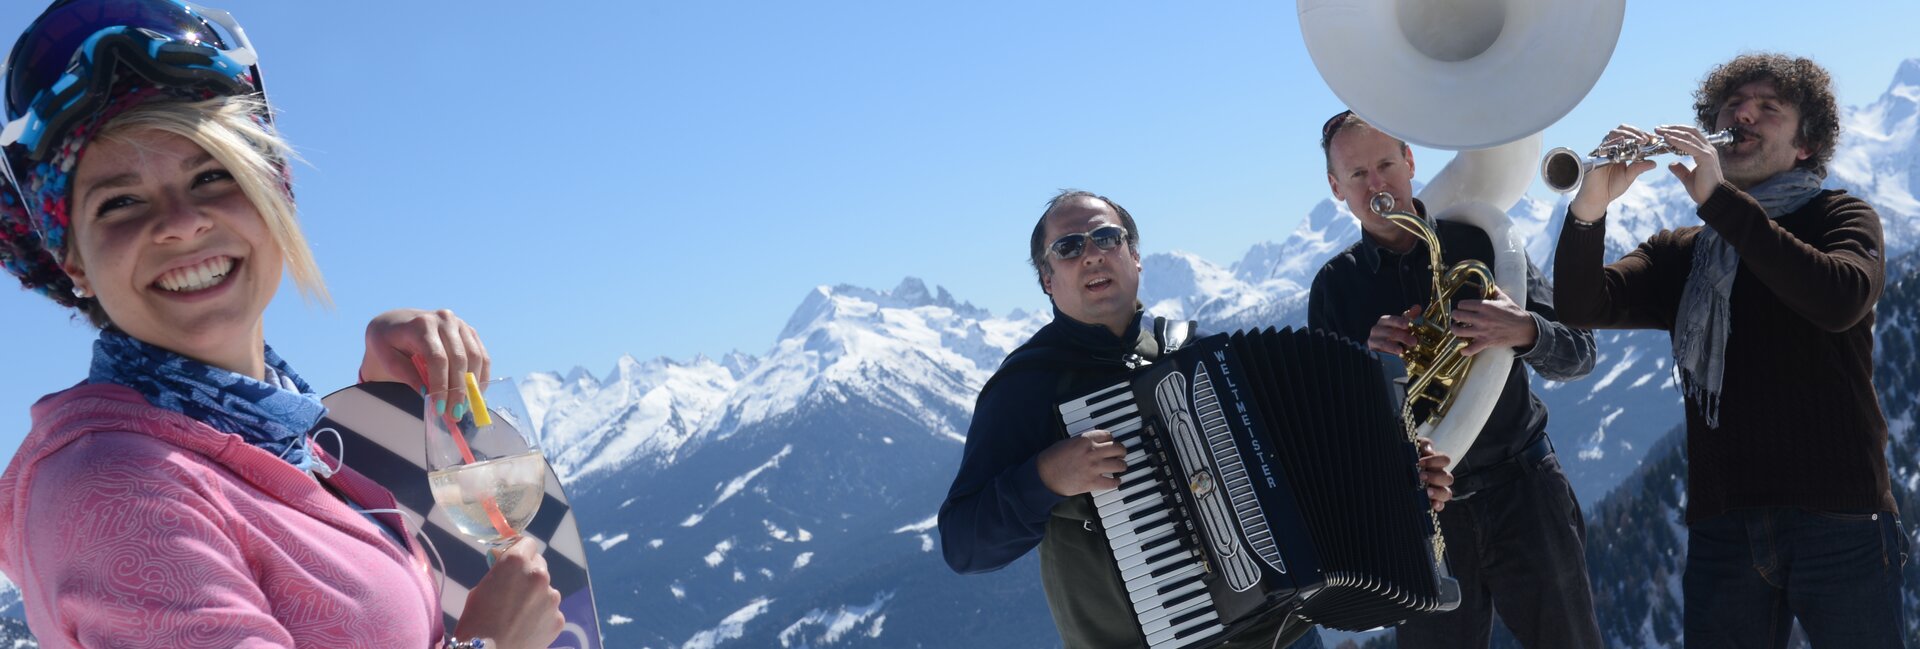 Dolomiti Ski Jazz, concerts on the ski slopes